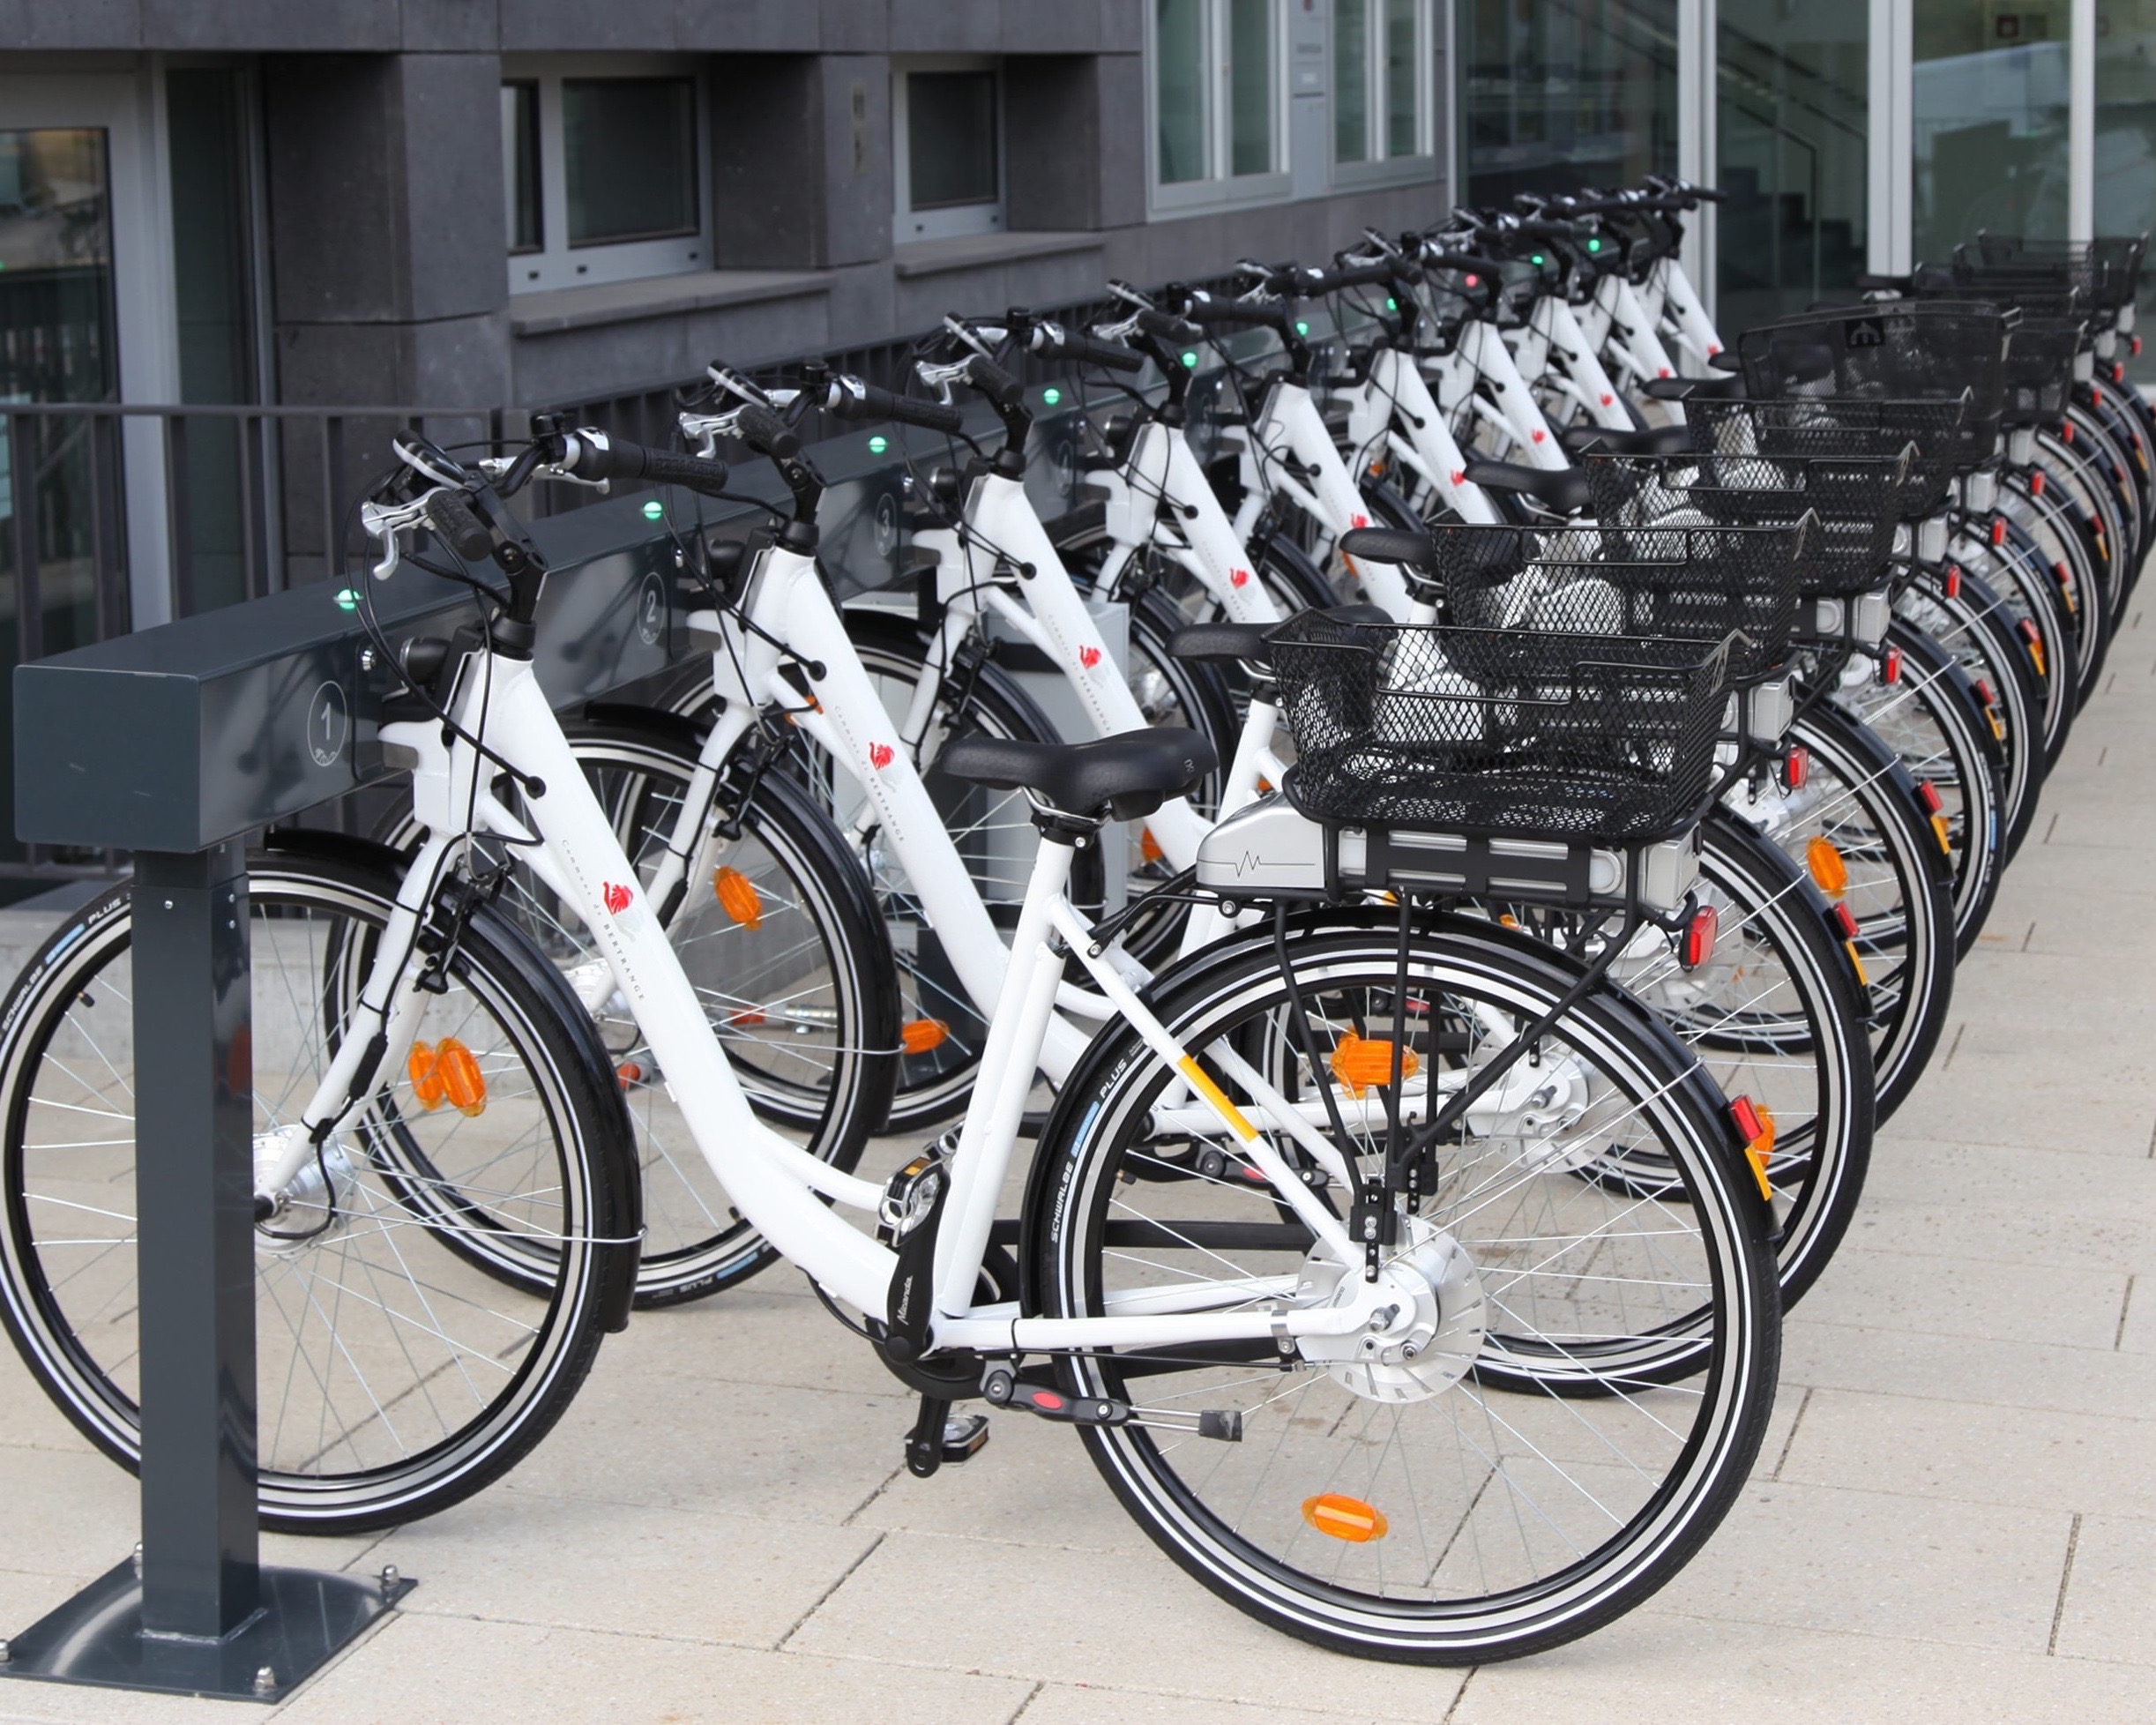 4° Conferenza Sharing Mobility: bike sharing più che triplicato rispetto al 2015